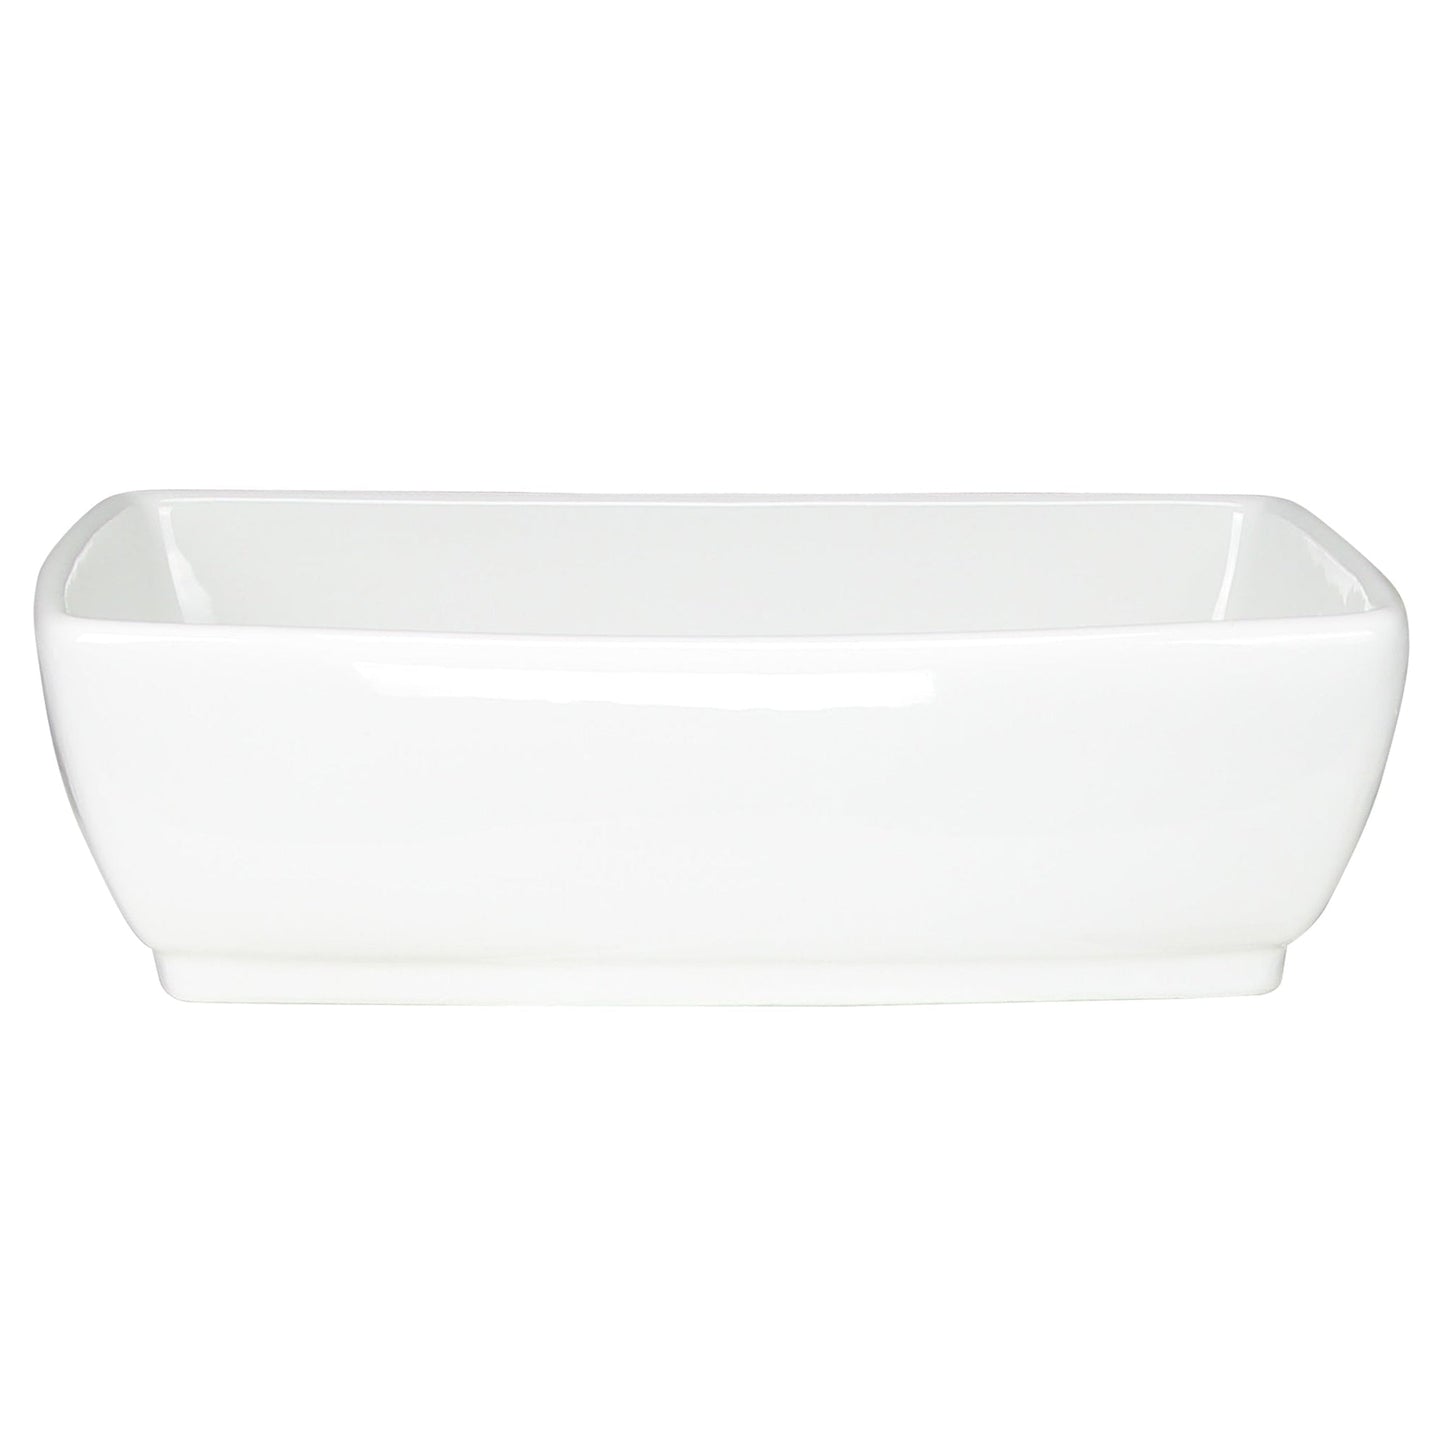 Nantucket Sinks Brant Point 19" W x 13" D Rectangular Porcelain Enamel Glazed White Ceramic Vessel Sink